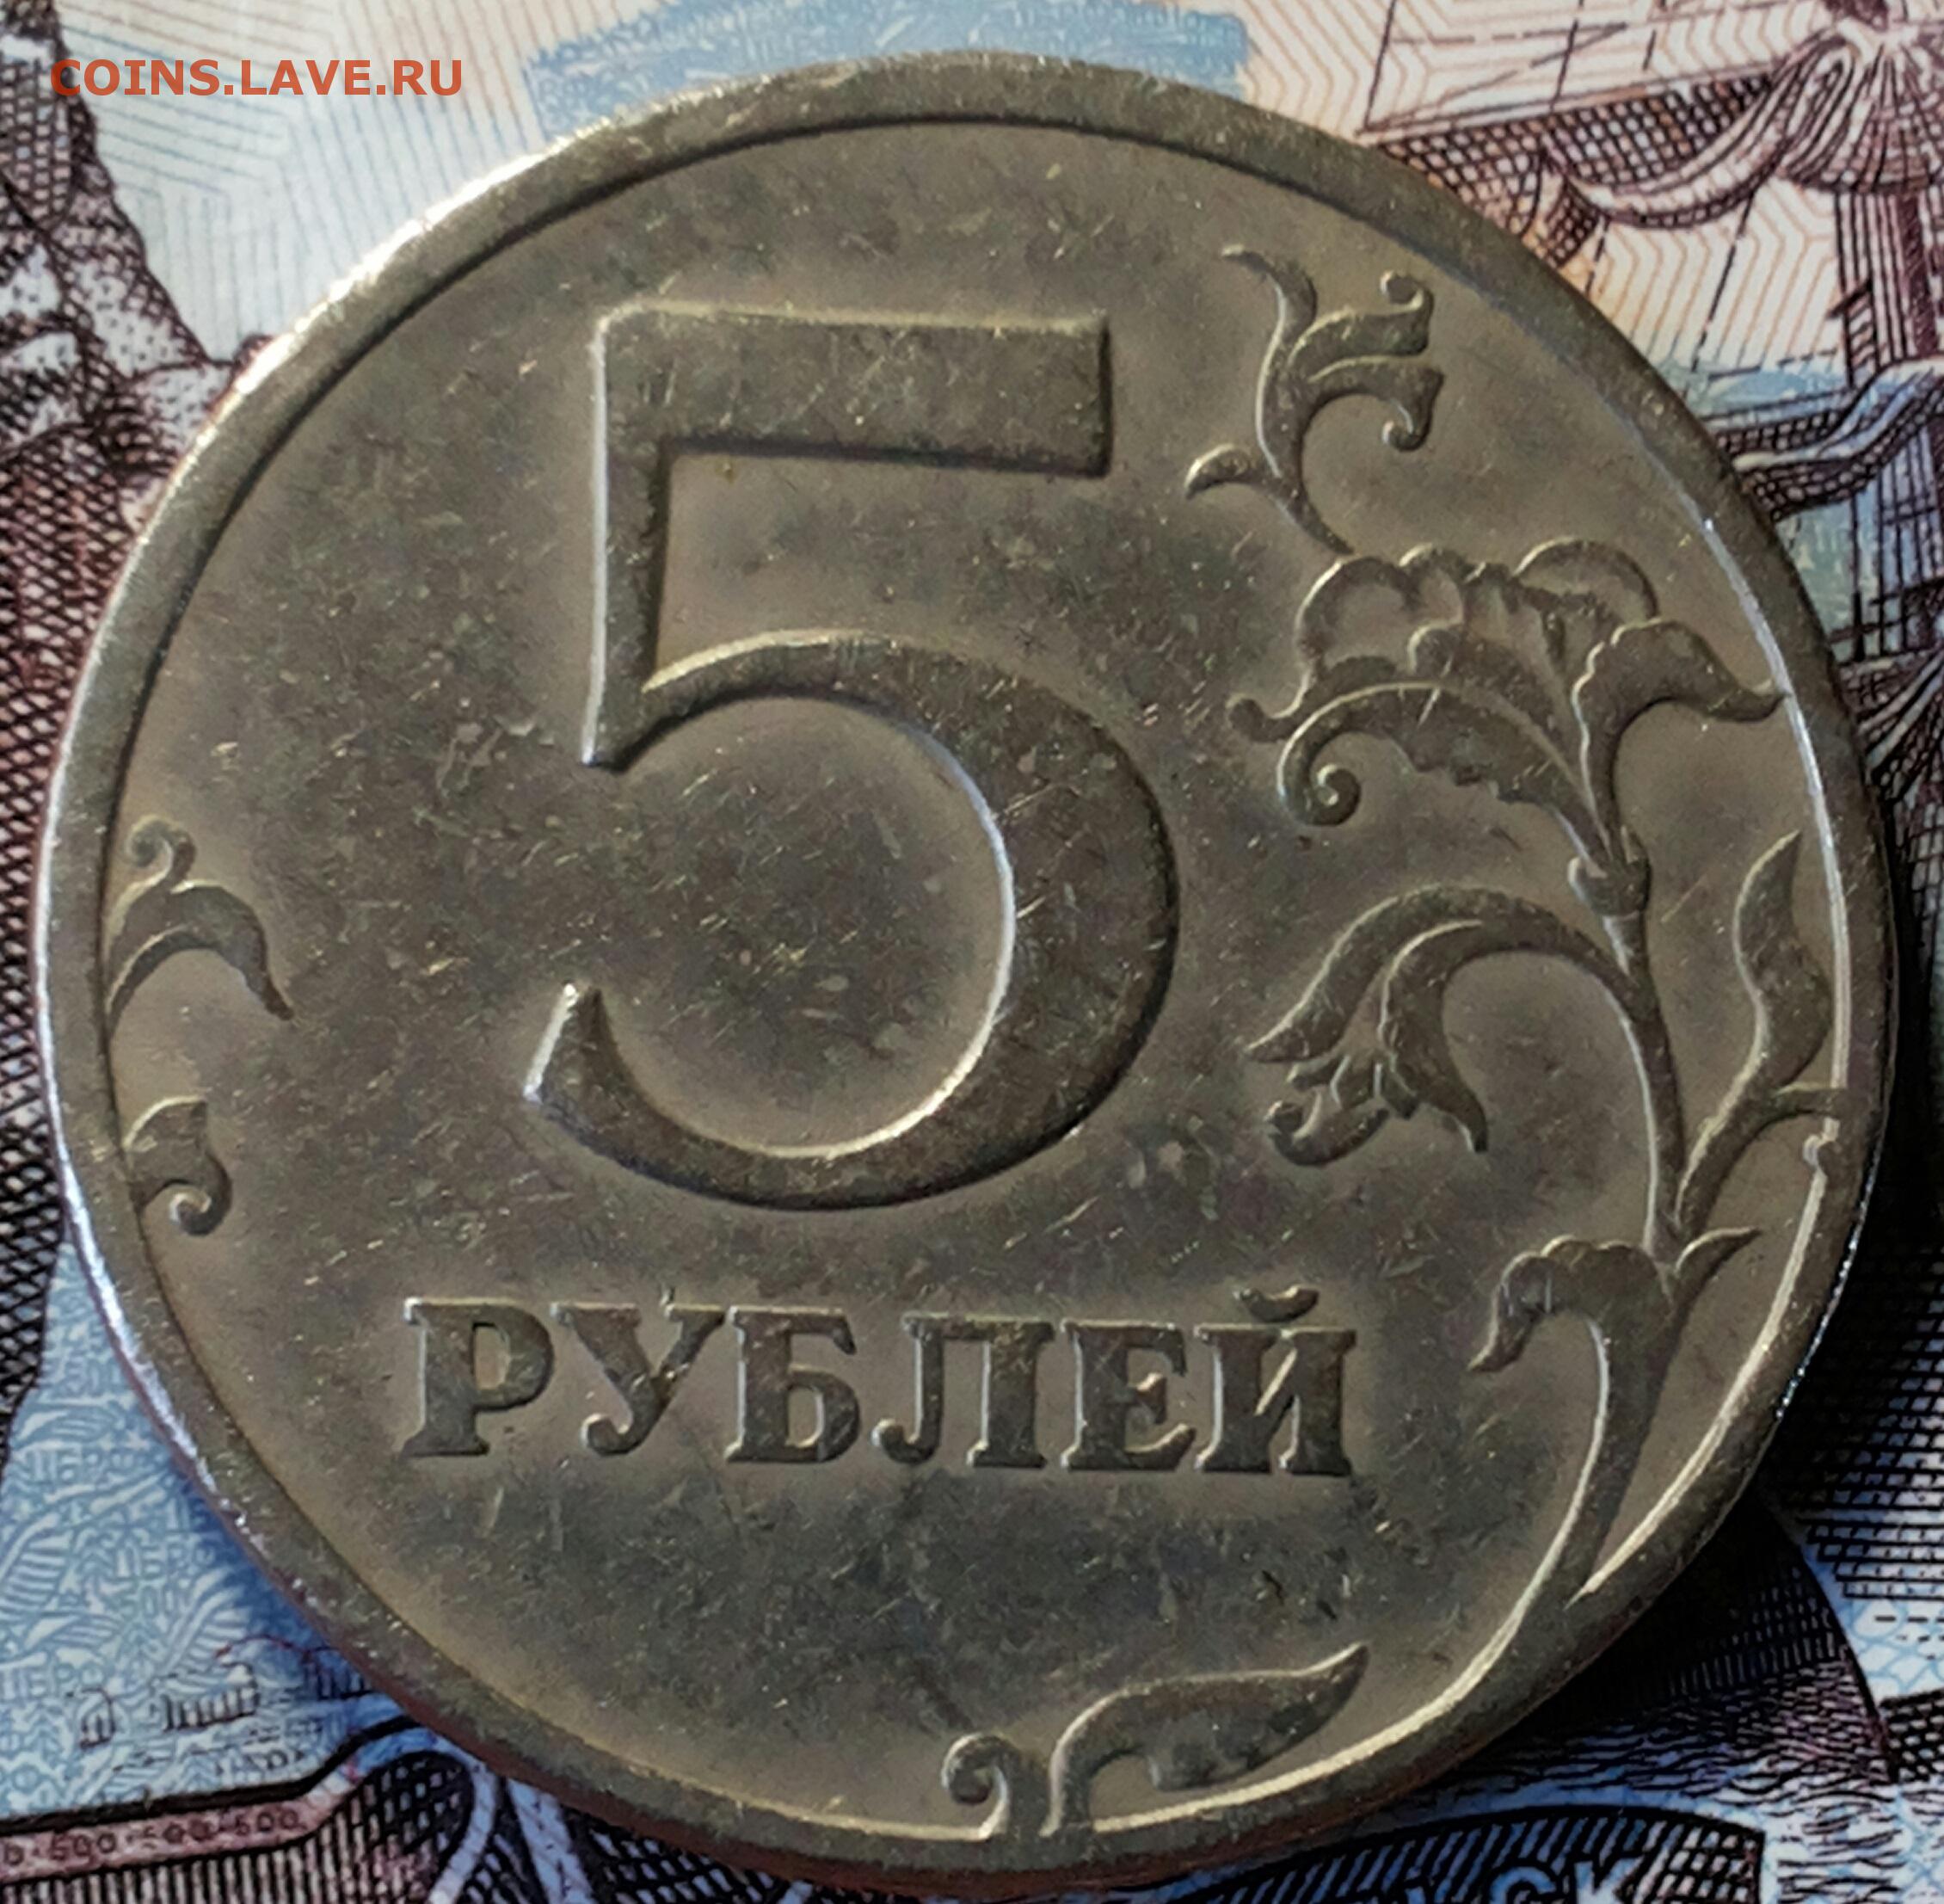 5 рублей 98 года. 5 Рублей 1997г. 5 Р 1997 года. 5 Рублей 1997. 5 Рублей с малой точкой.